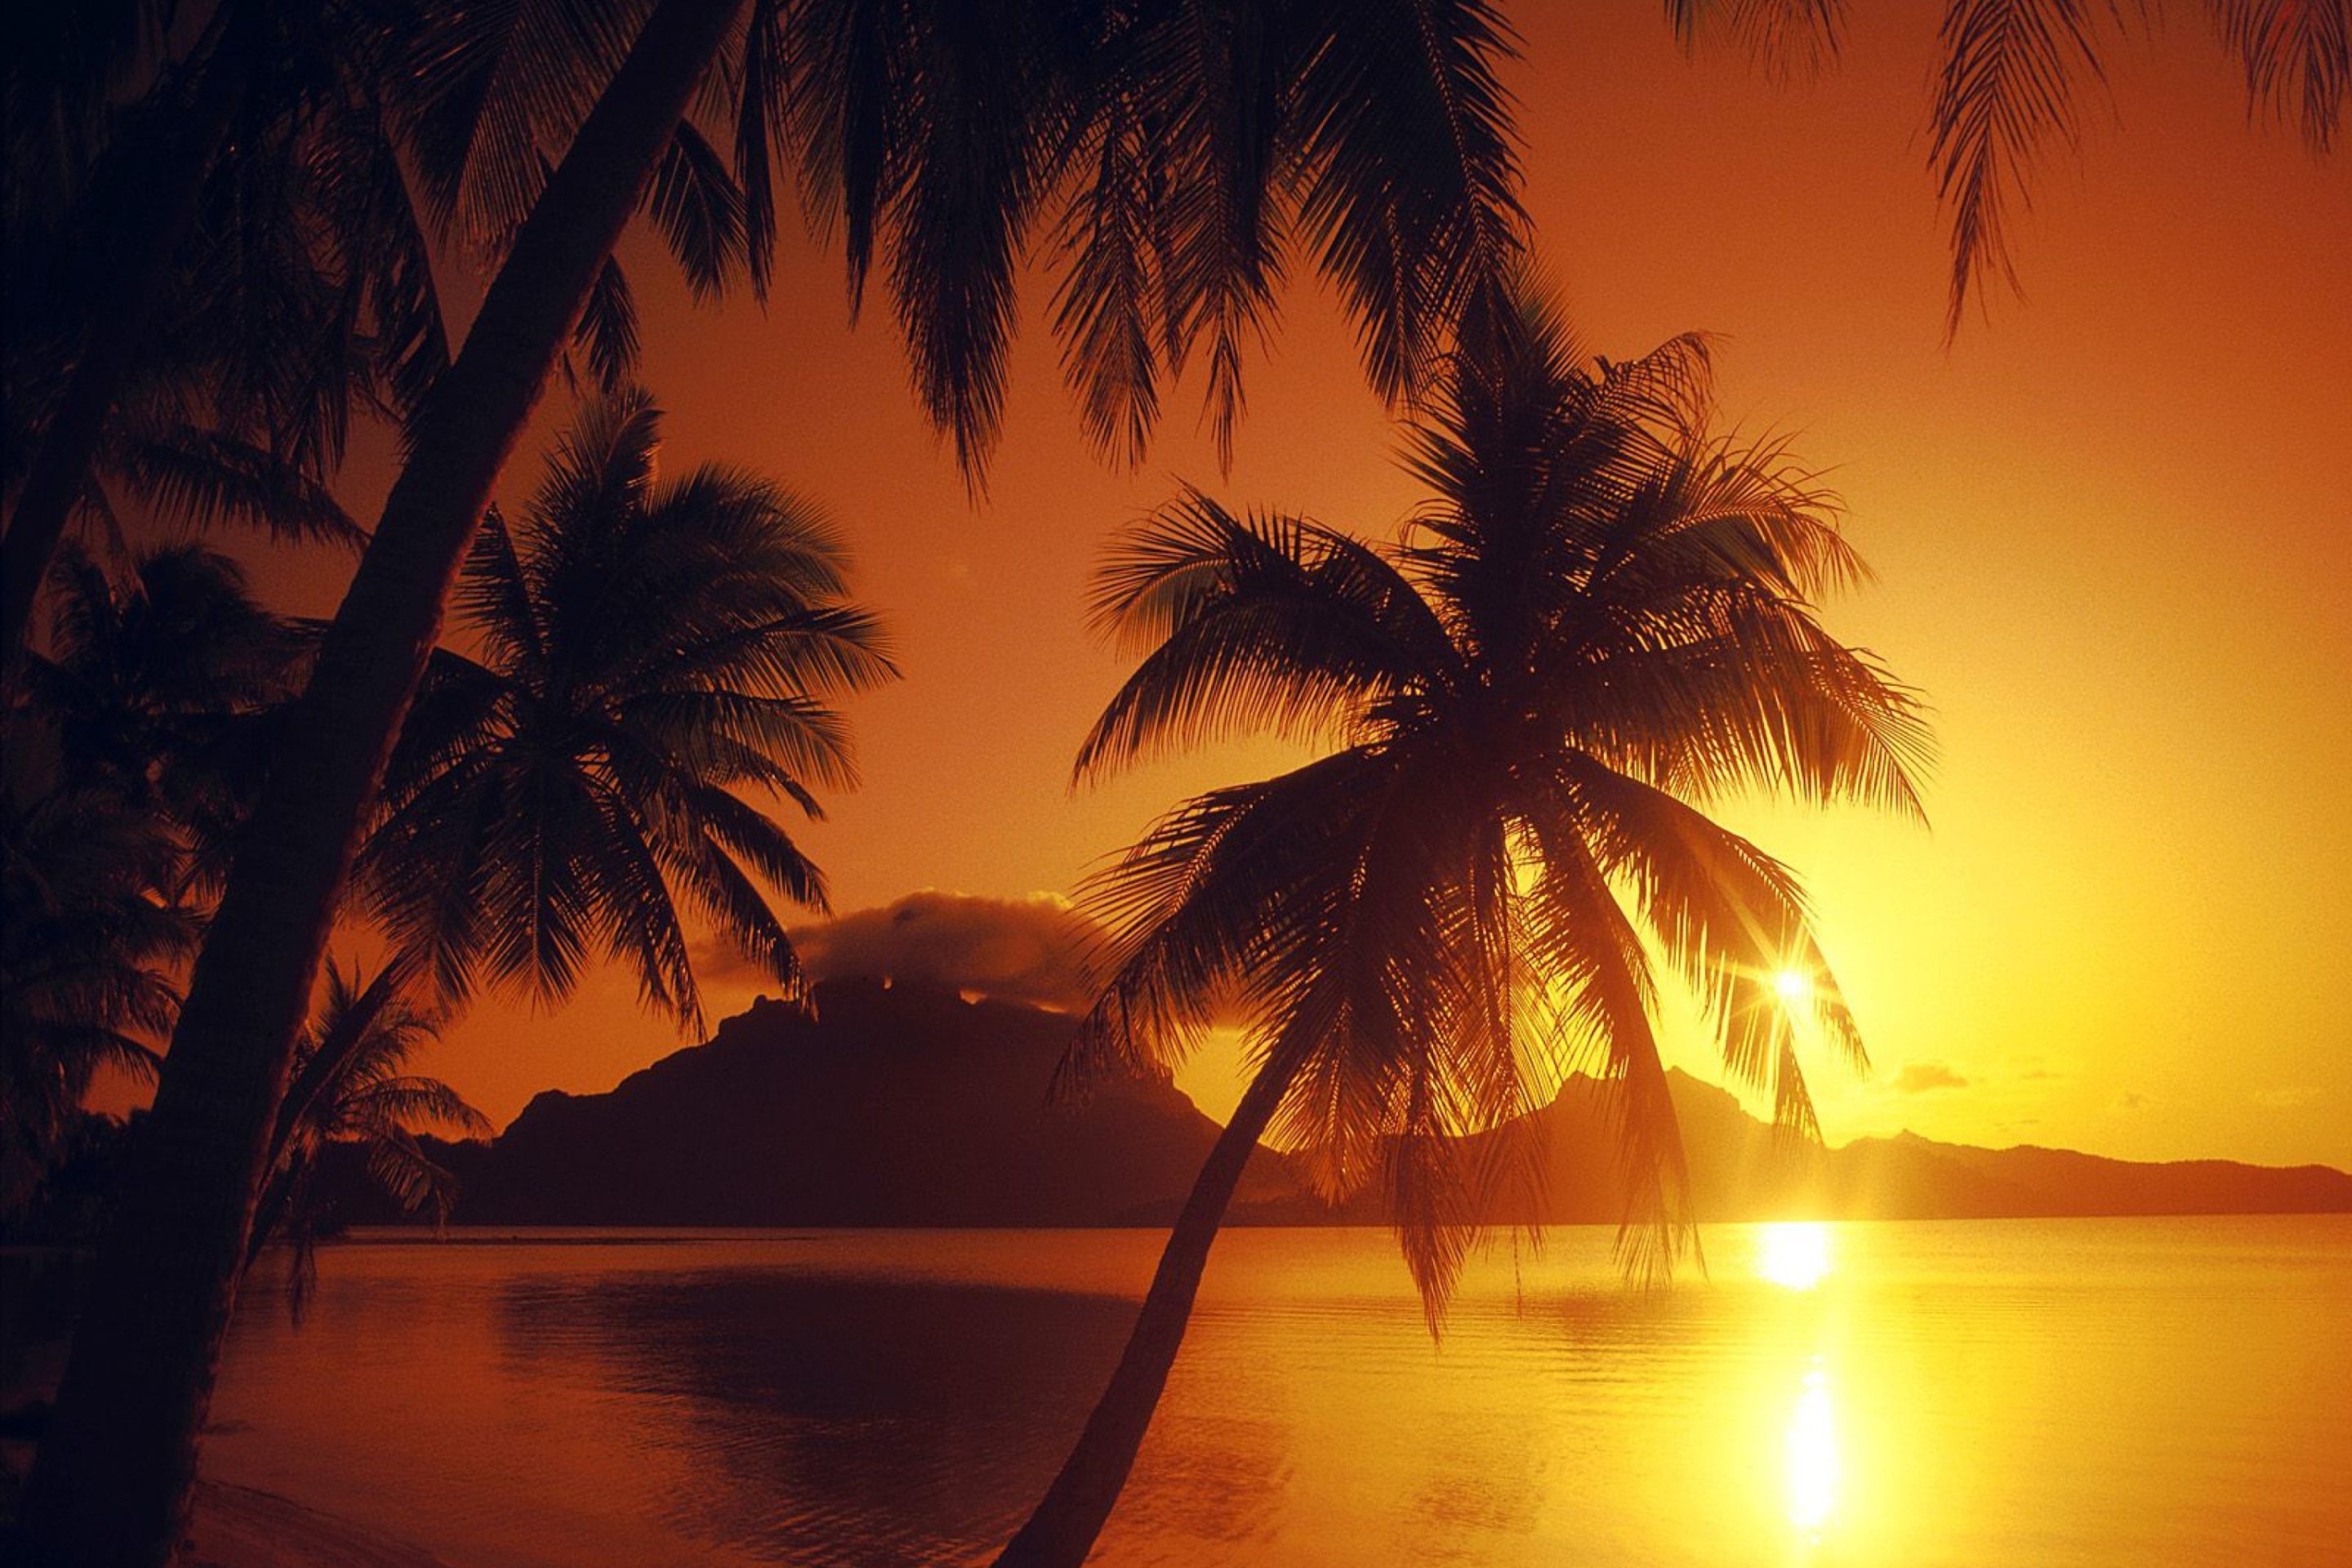 Sfondi Palms At Sunset 2880x1920